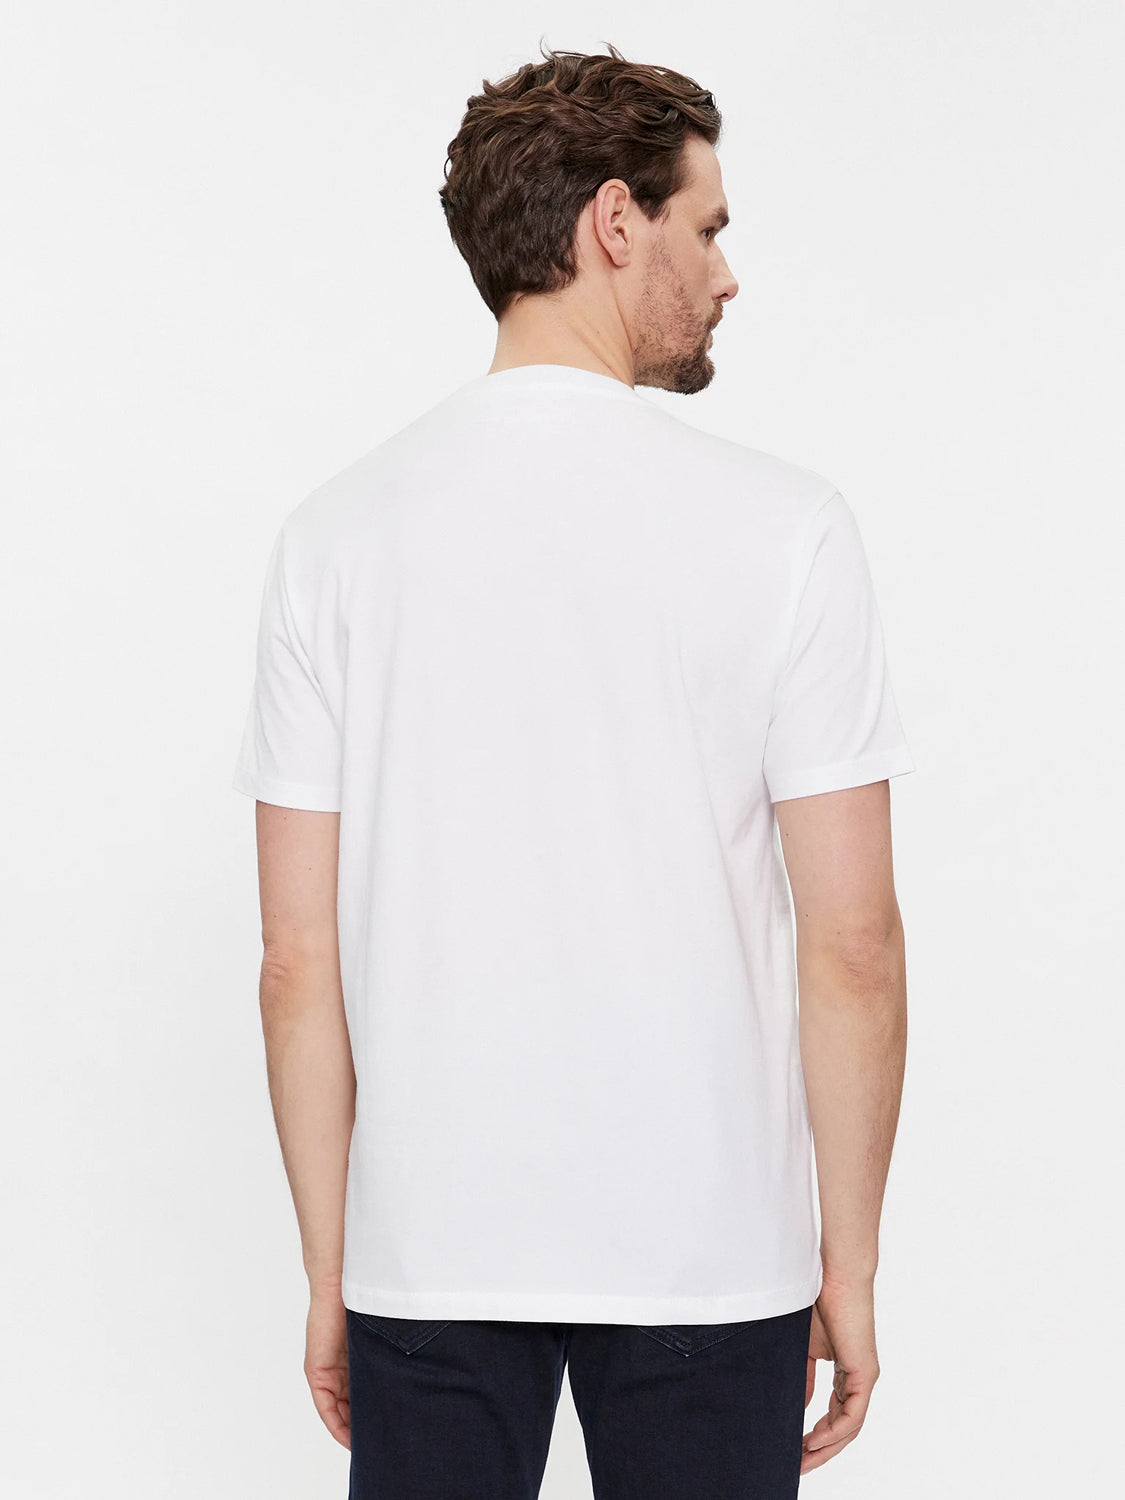 Karl Lagerfeld T Shirt Kl755403 White Branco_shot1